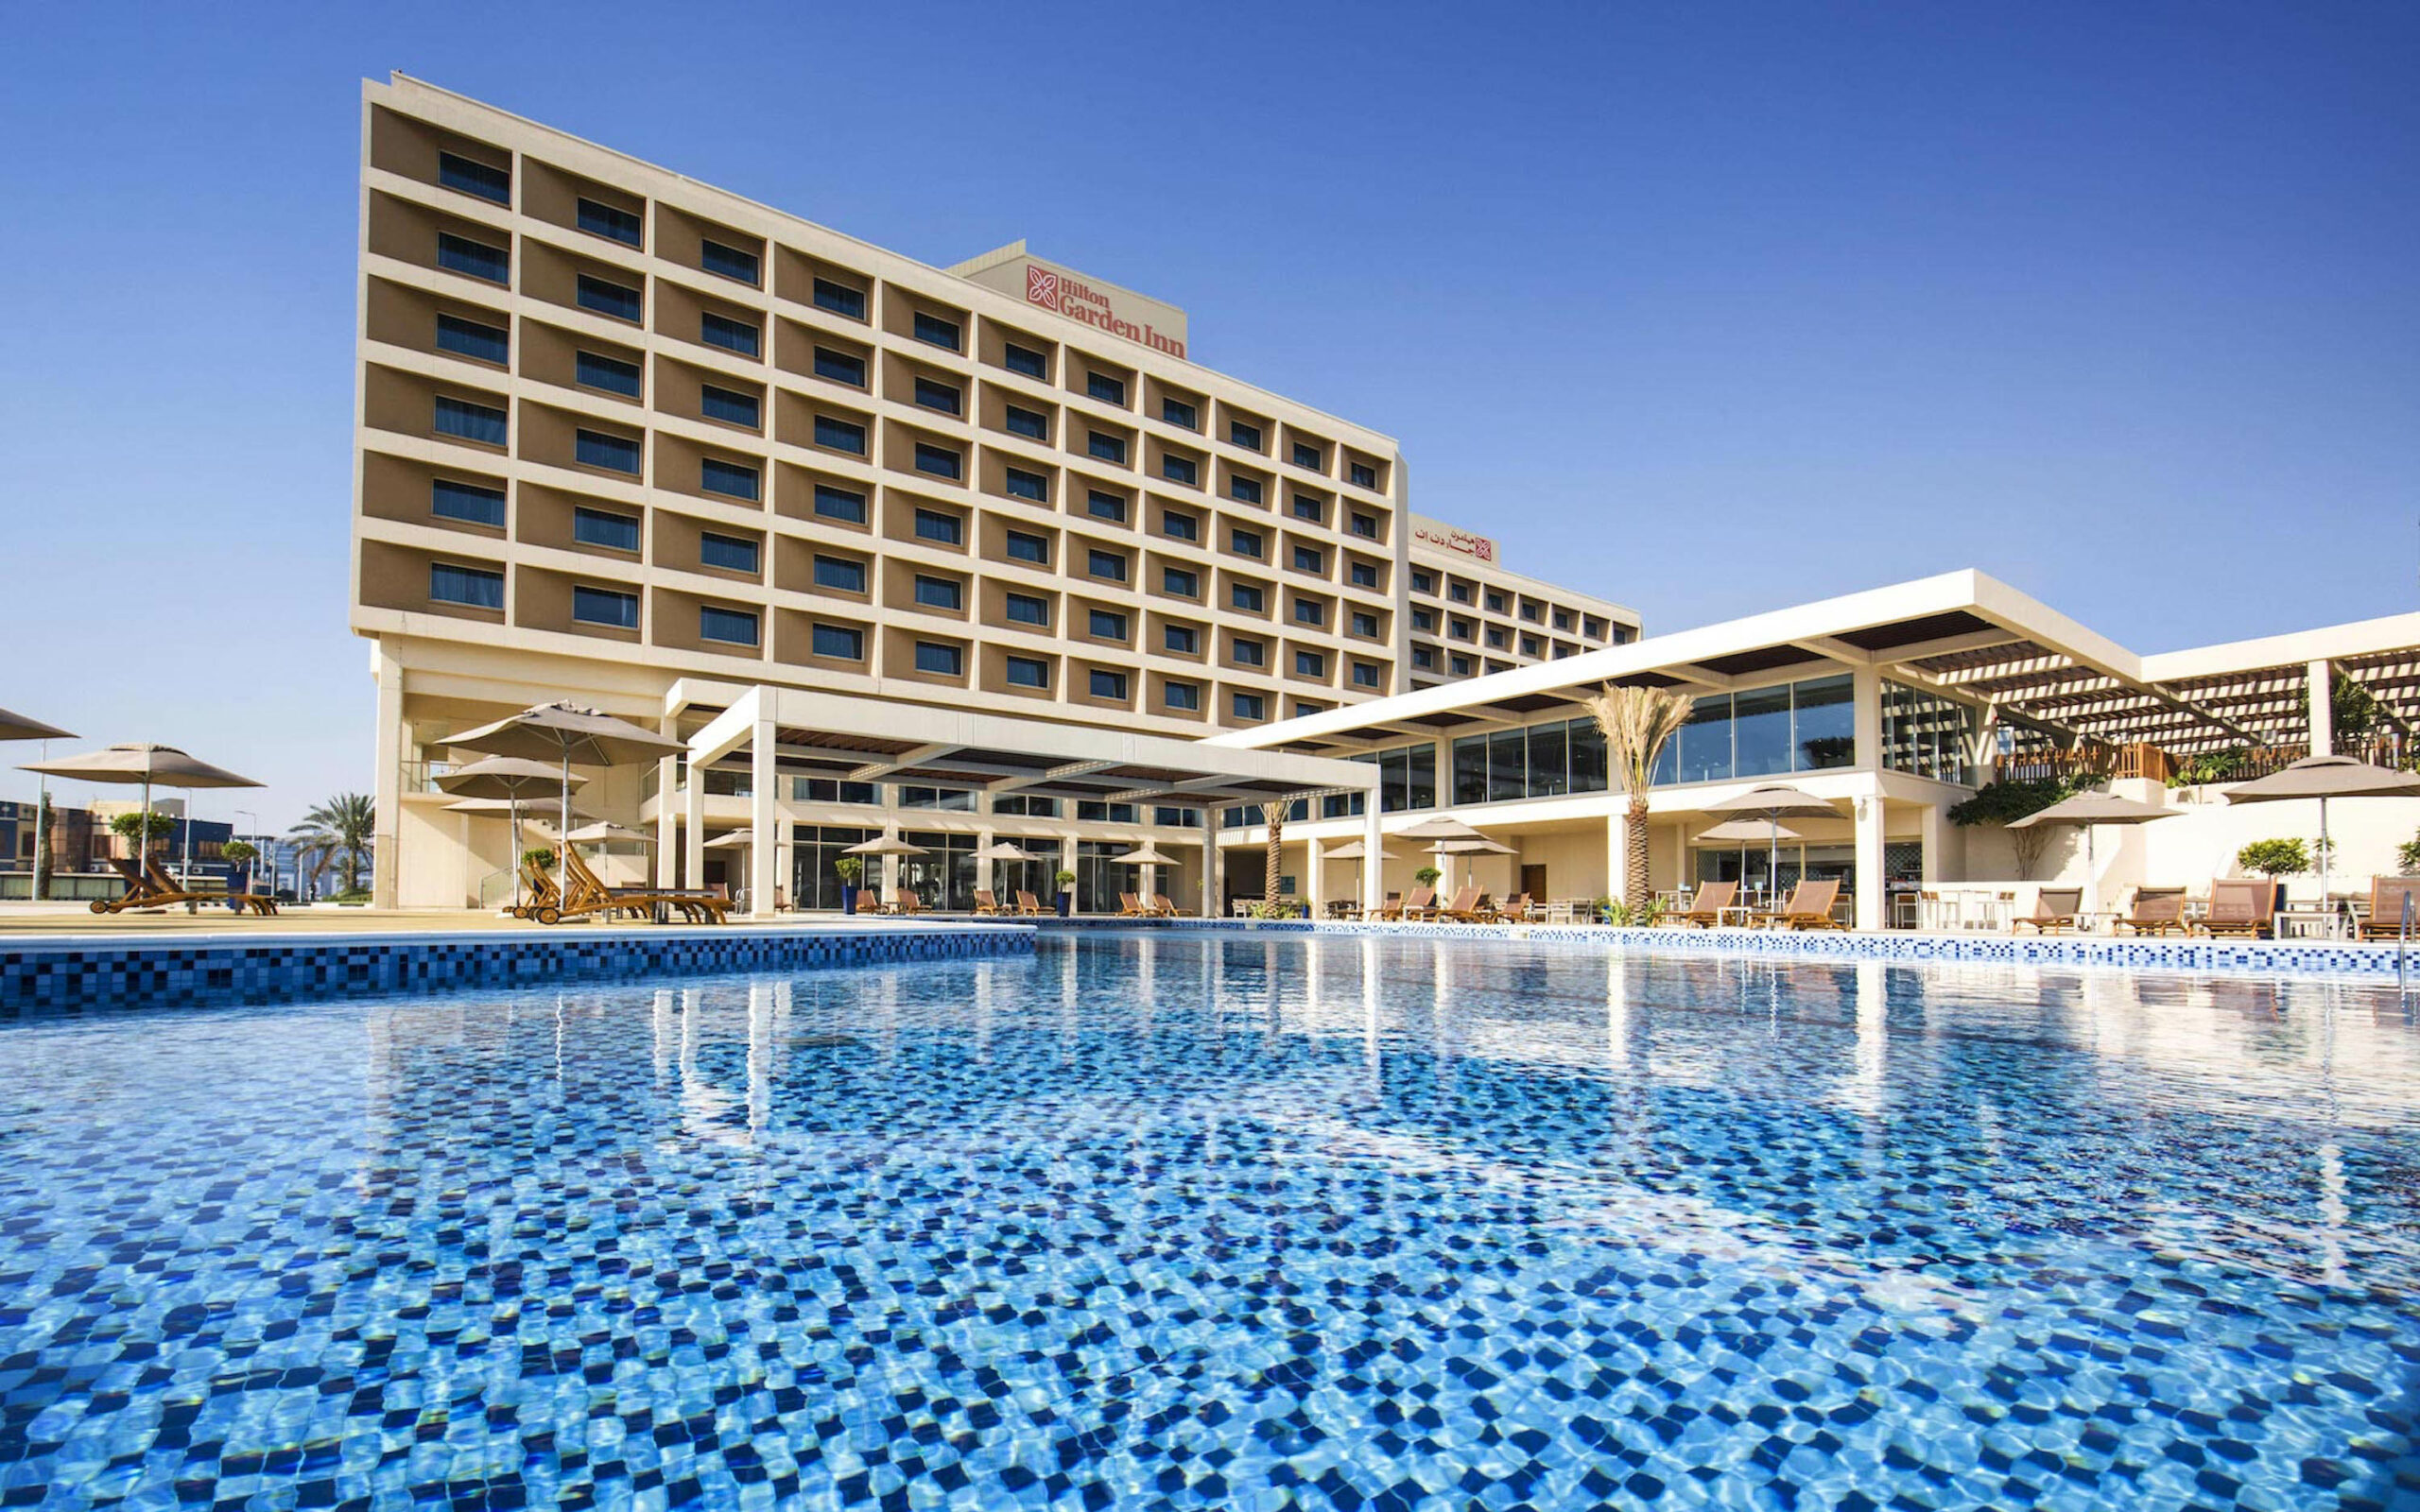 Summer sundowner deal at Hilton Garden Inn - Hotelier Middle East